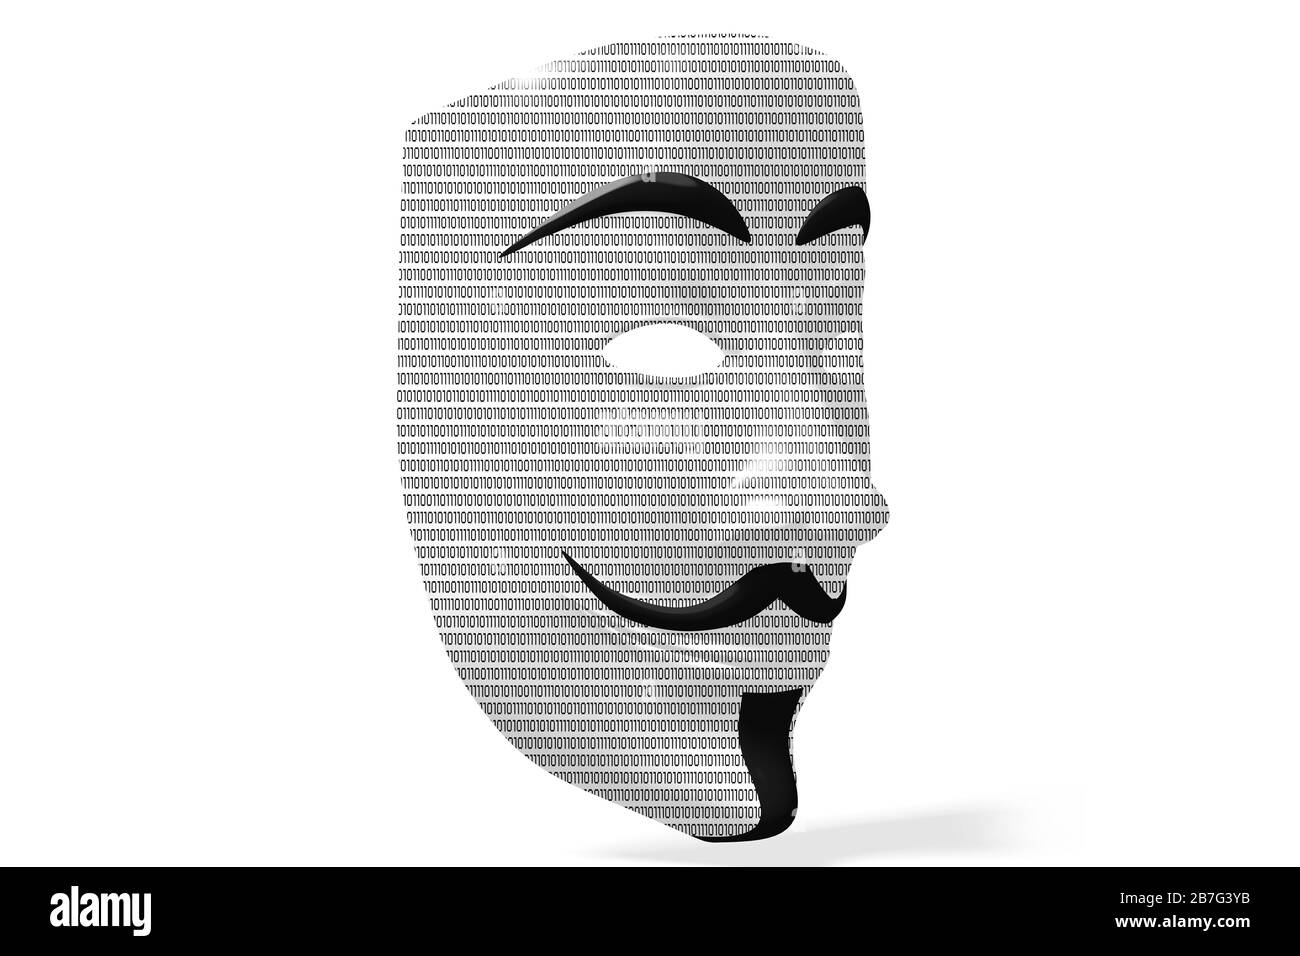 Maschera anonima con codice binario - isolata su sfondo bianco Foto Stock